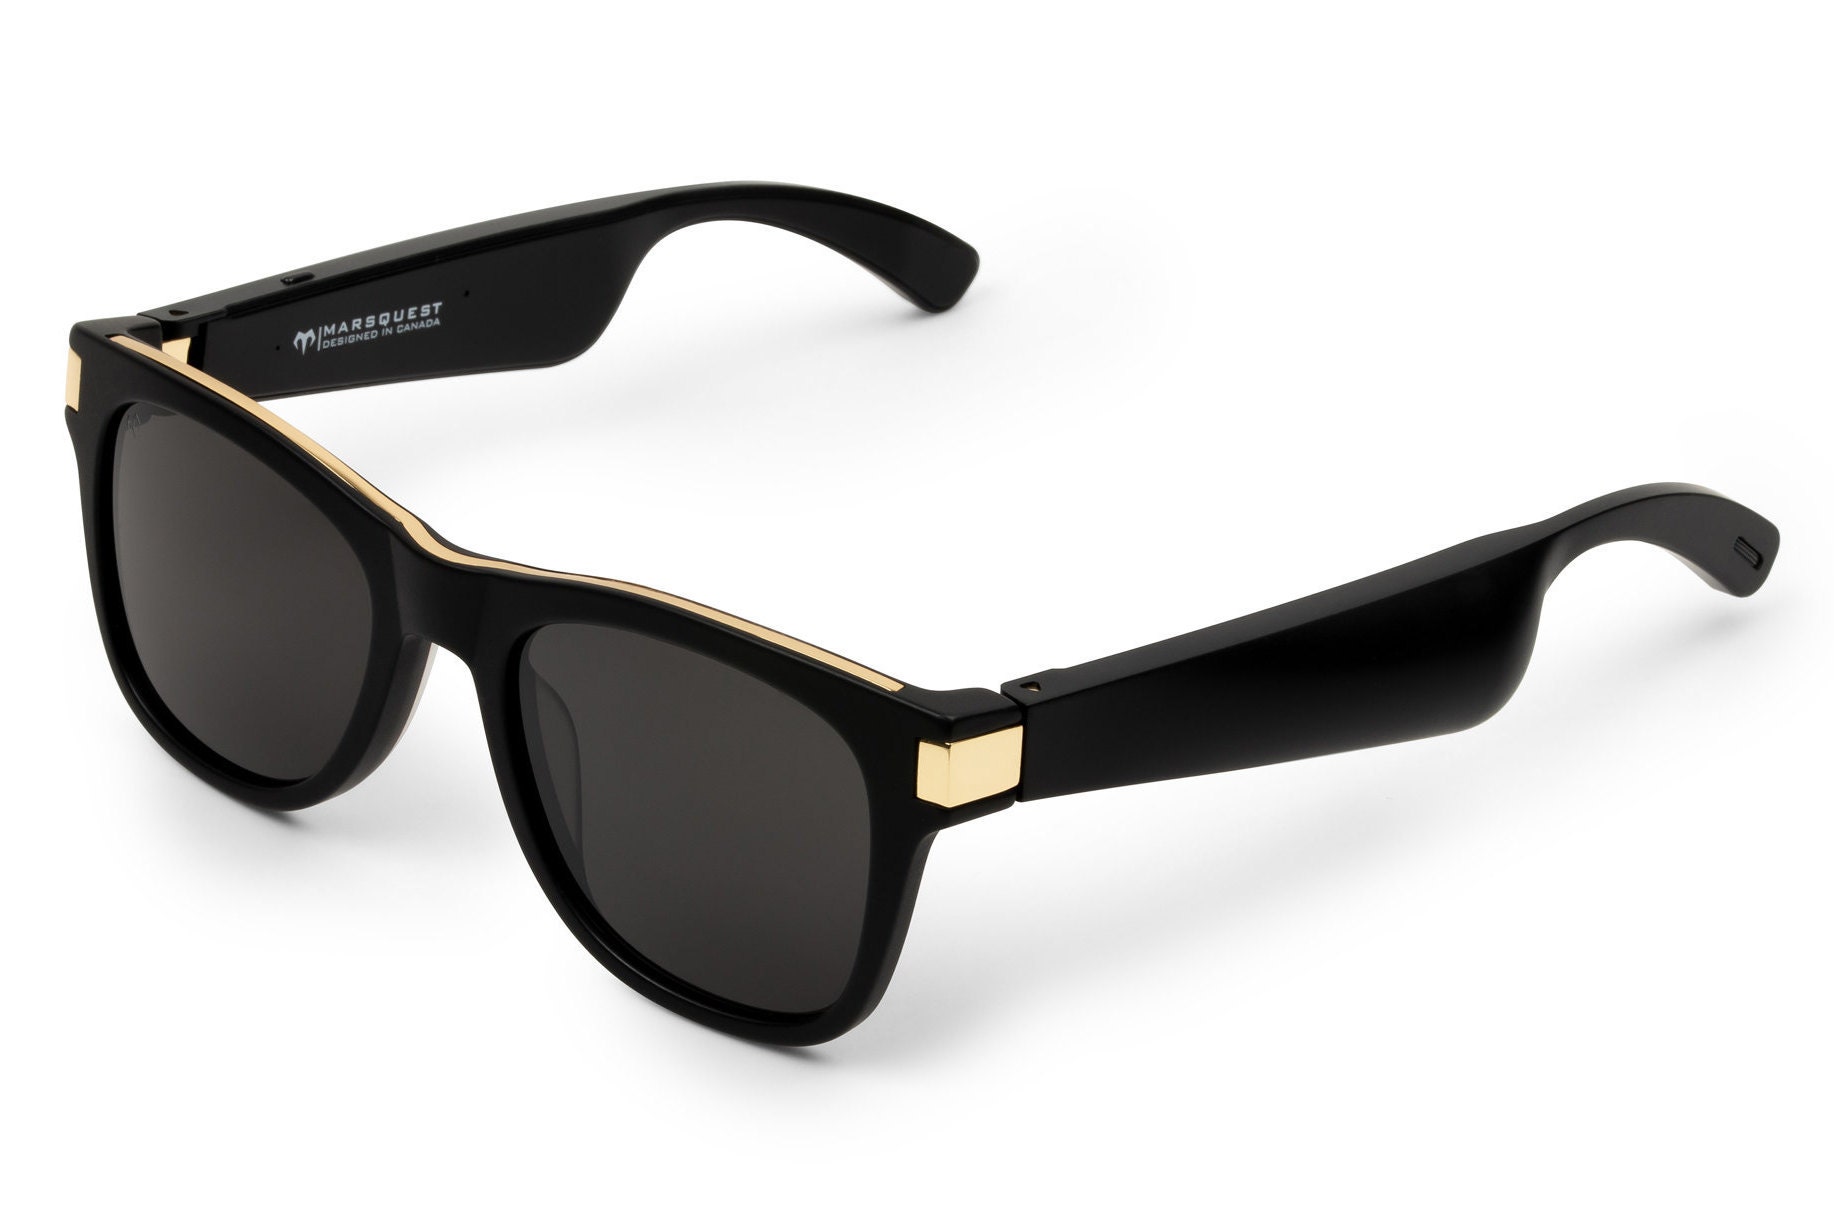 47. Bluetooth Smart Sunglasses